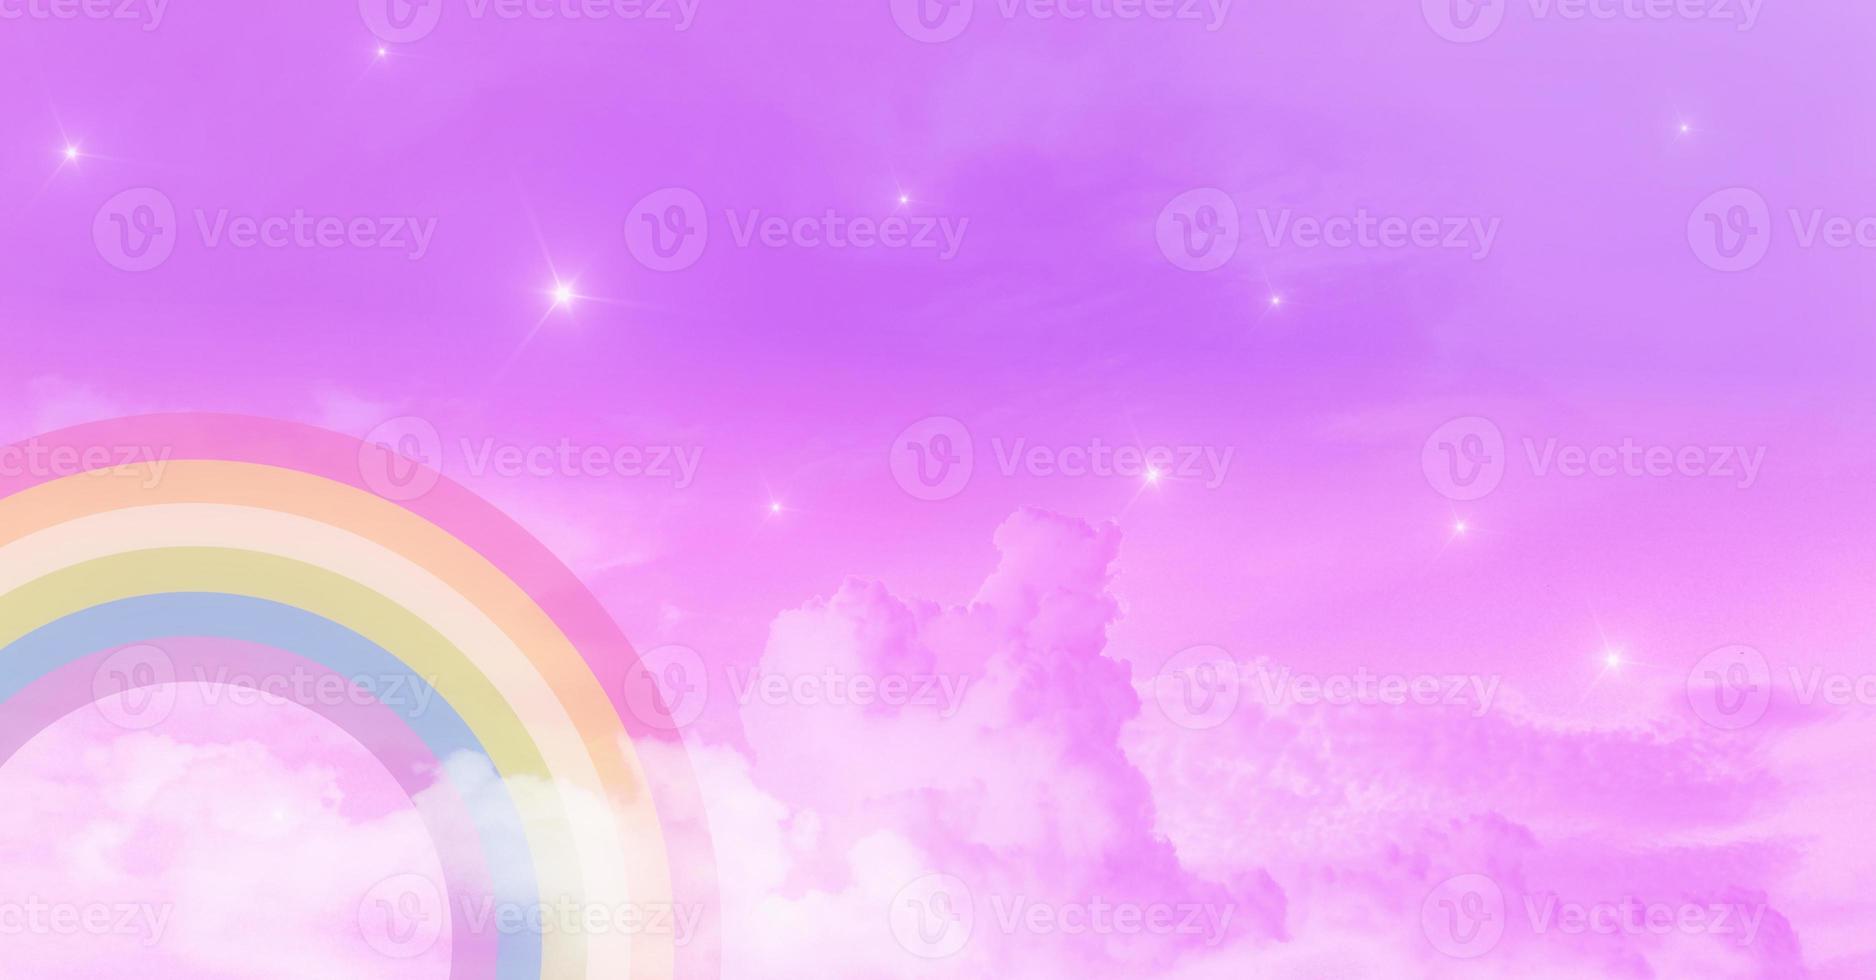 abstrakt kawaii. Regenbogen träumt Einhorn Himmelshintergrund. Pastell-Cartoon-Grafik mit weichem Farbverlauf. konzept für hochzeitskartendesign oder kinderfest foto